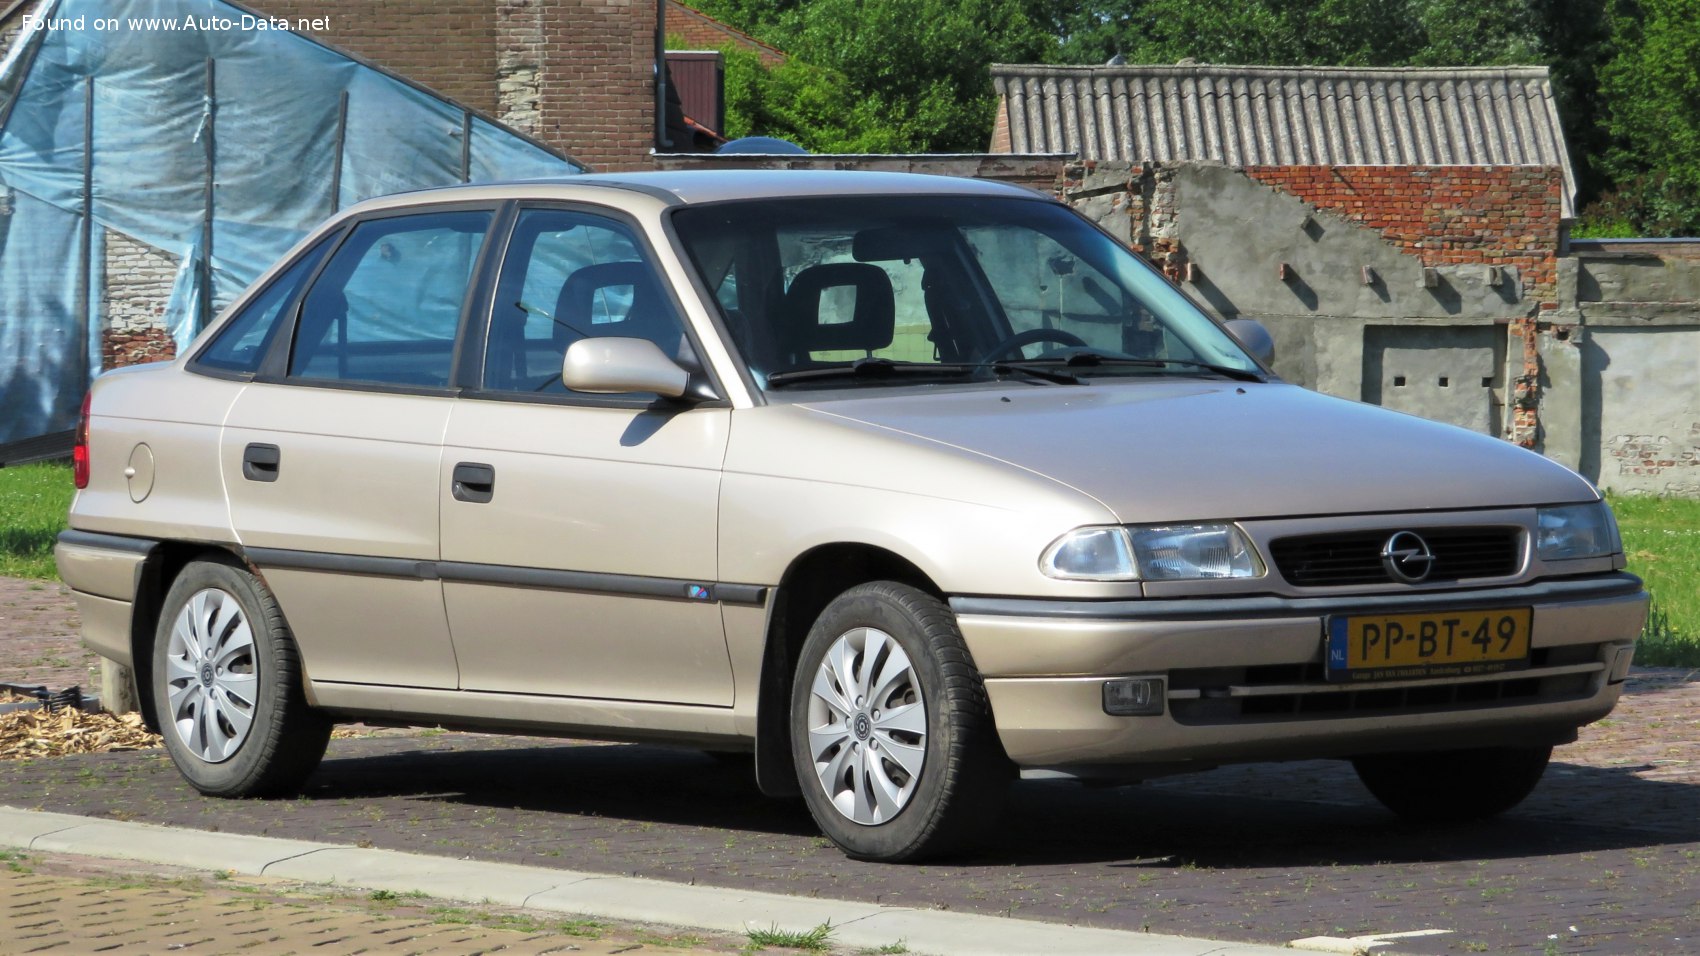 1996 Opel Astra F Classic (facelift 1994) 1.8i Ecotec 16V Automatic Technical specs, data, fuel consumption,